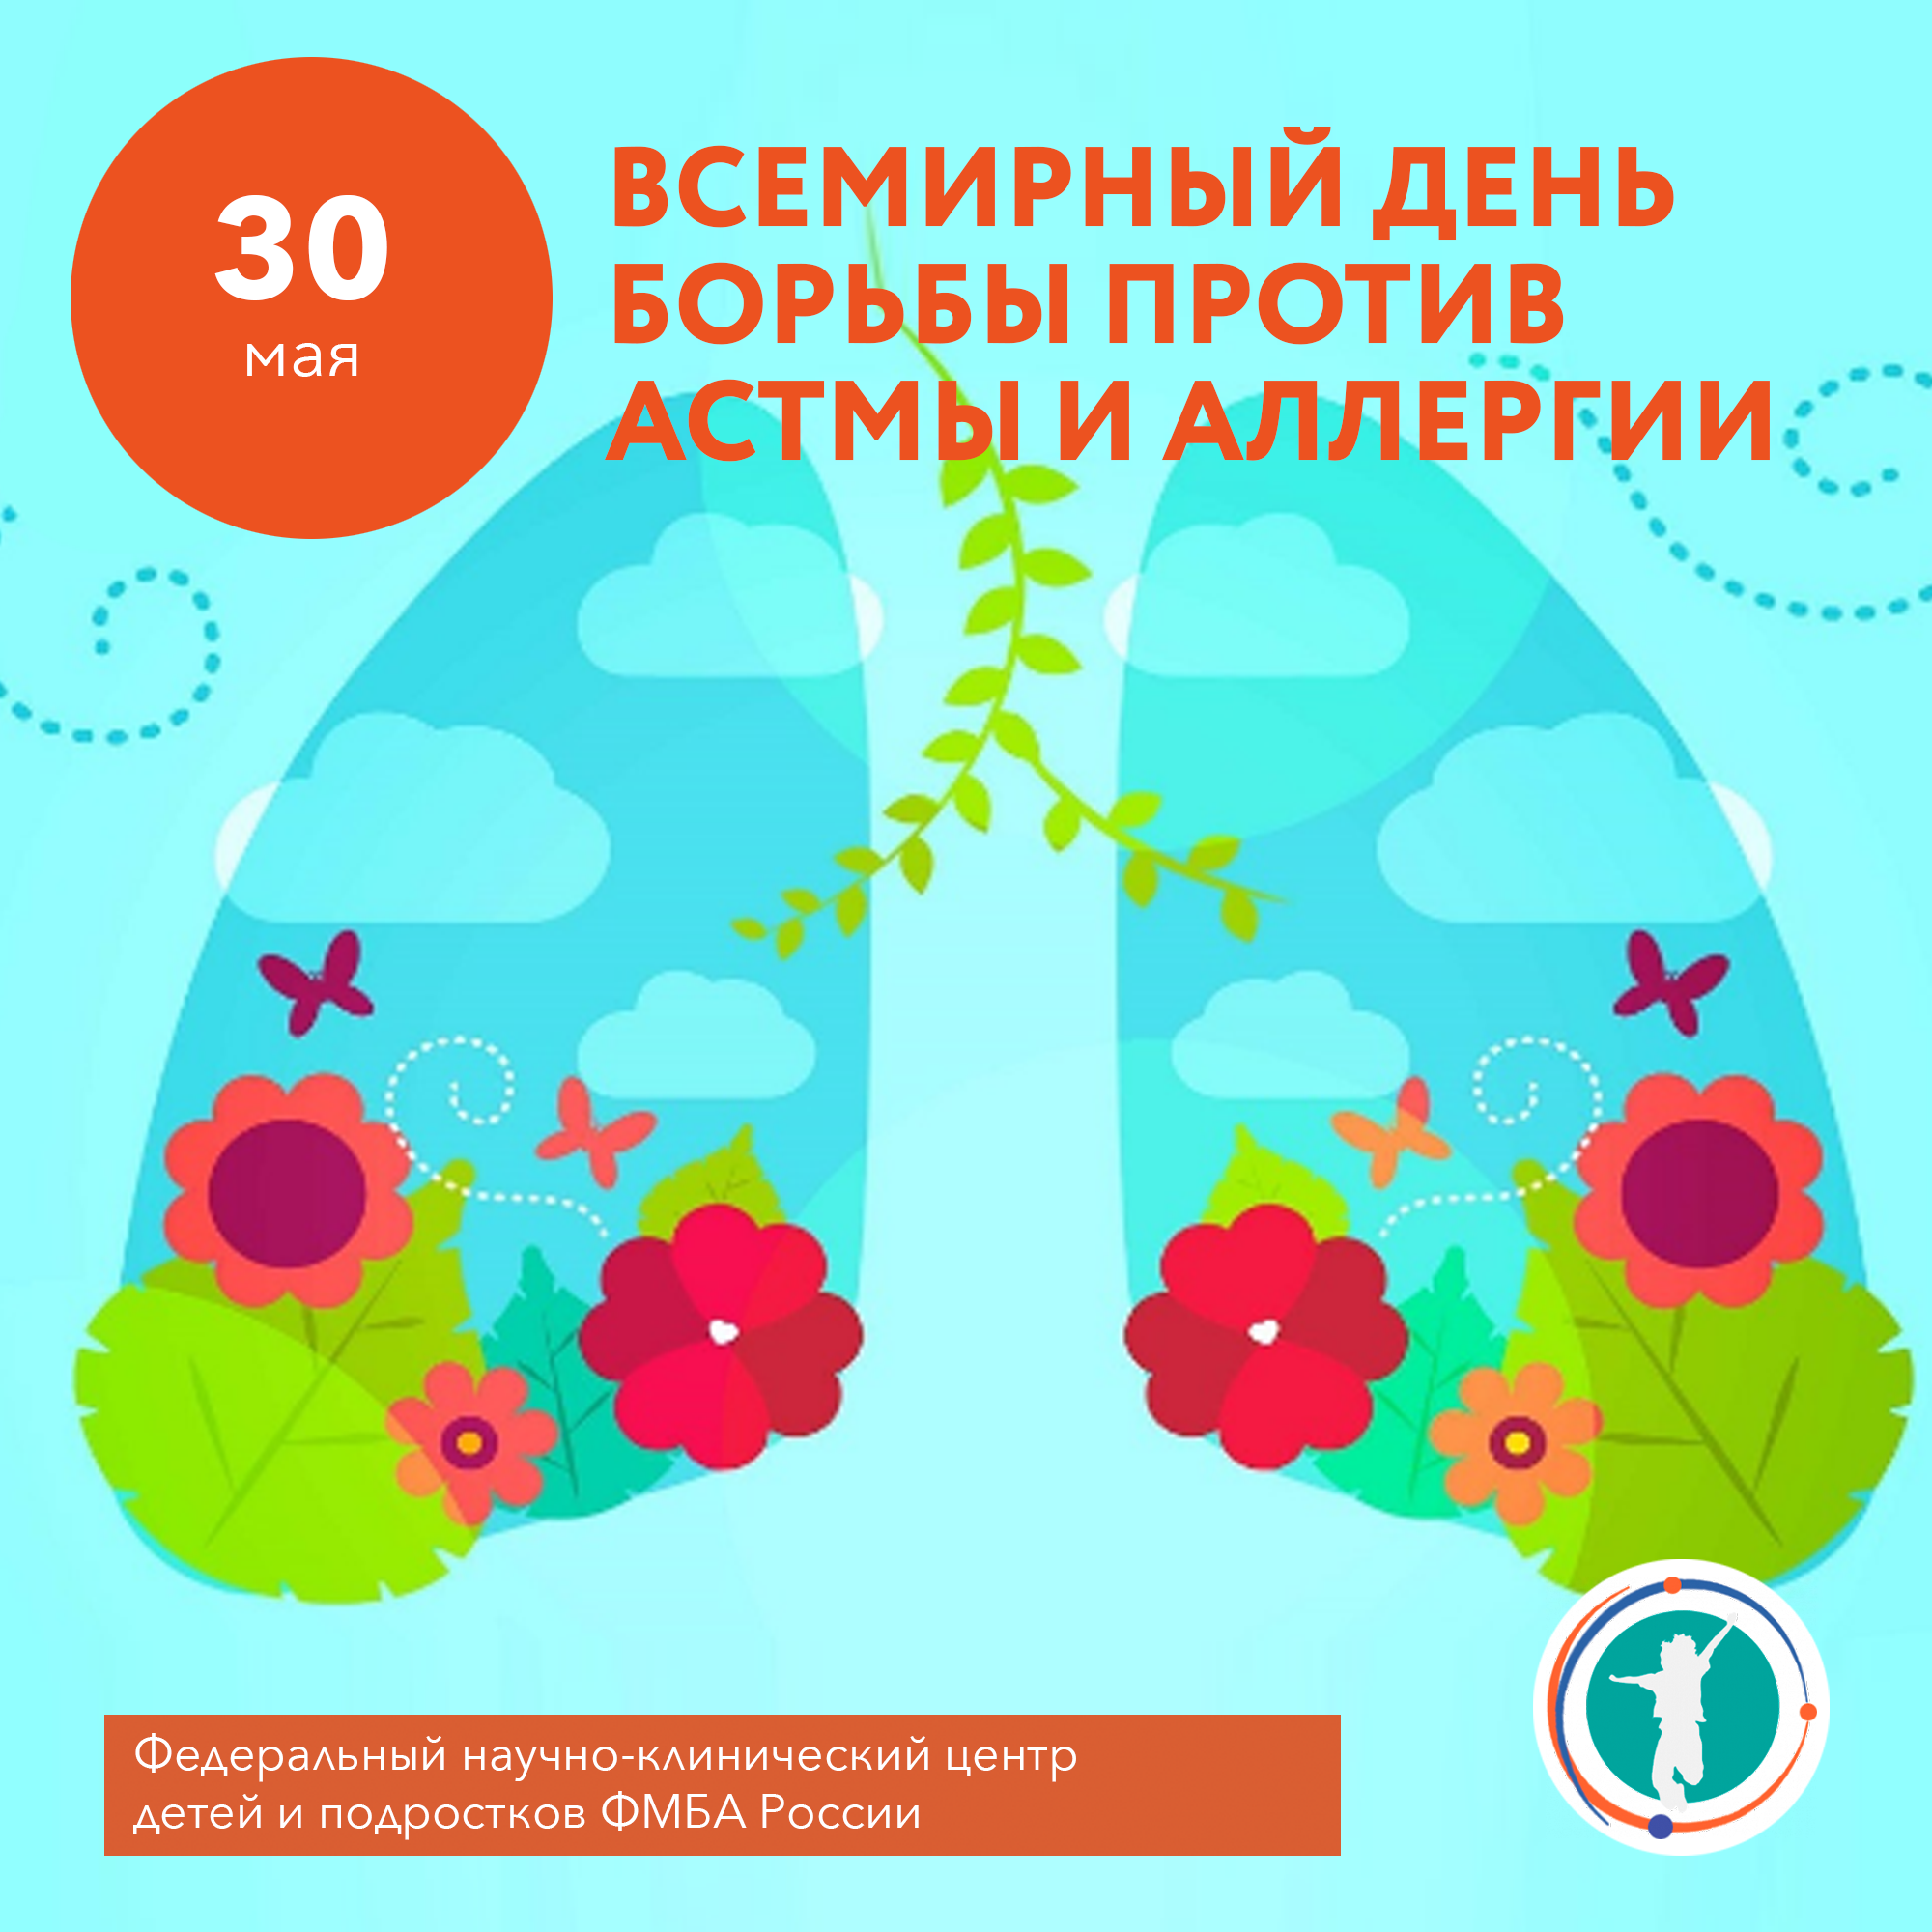 30 мая 3 июня. День борьбы с аллергией и астмой. День борьбы против астмы и аллергии. Всемирный день против астмы. Всемирный день борьбы против астмы и аллергии открытки.